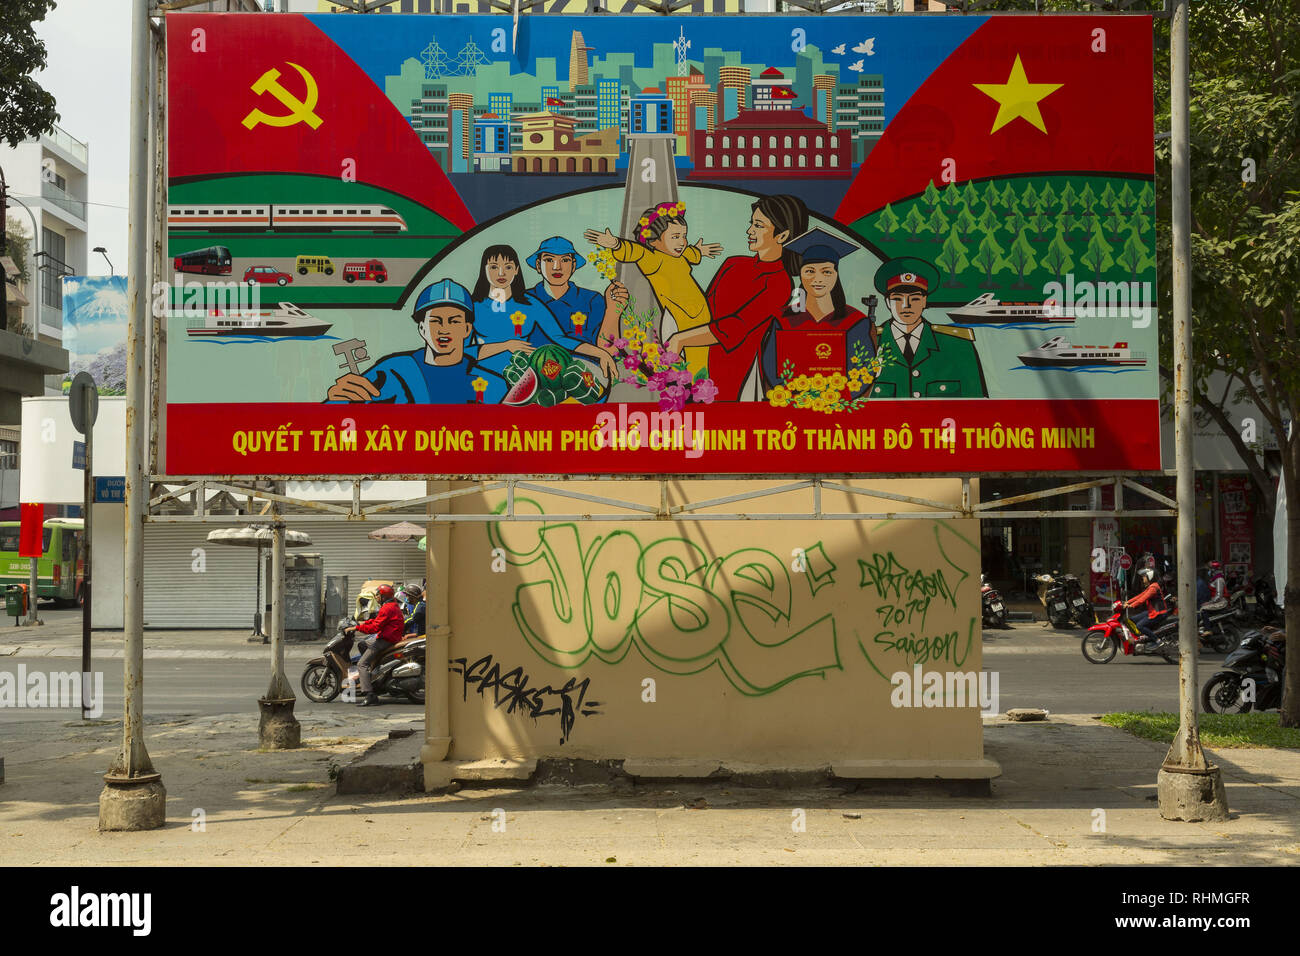 La propagande politique au Vietnam Banque D'Images